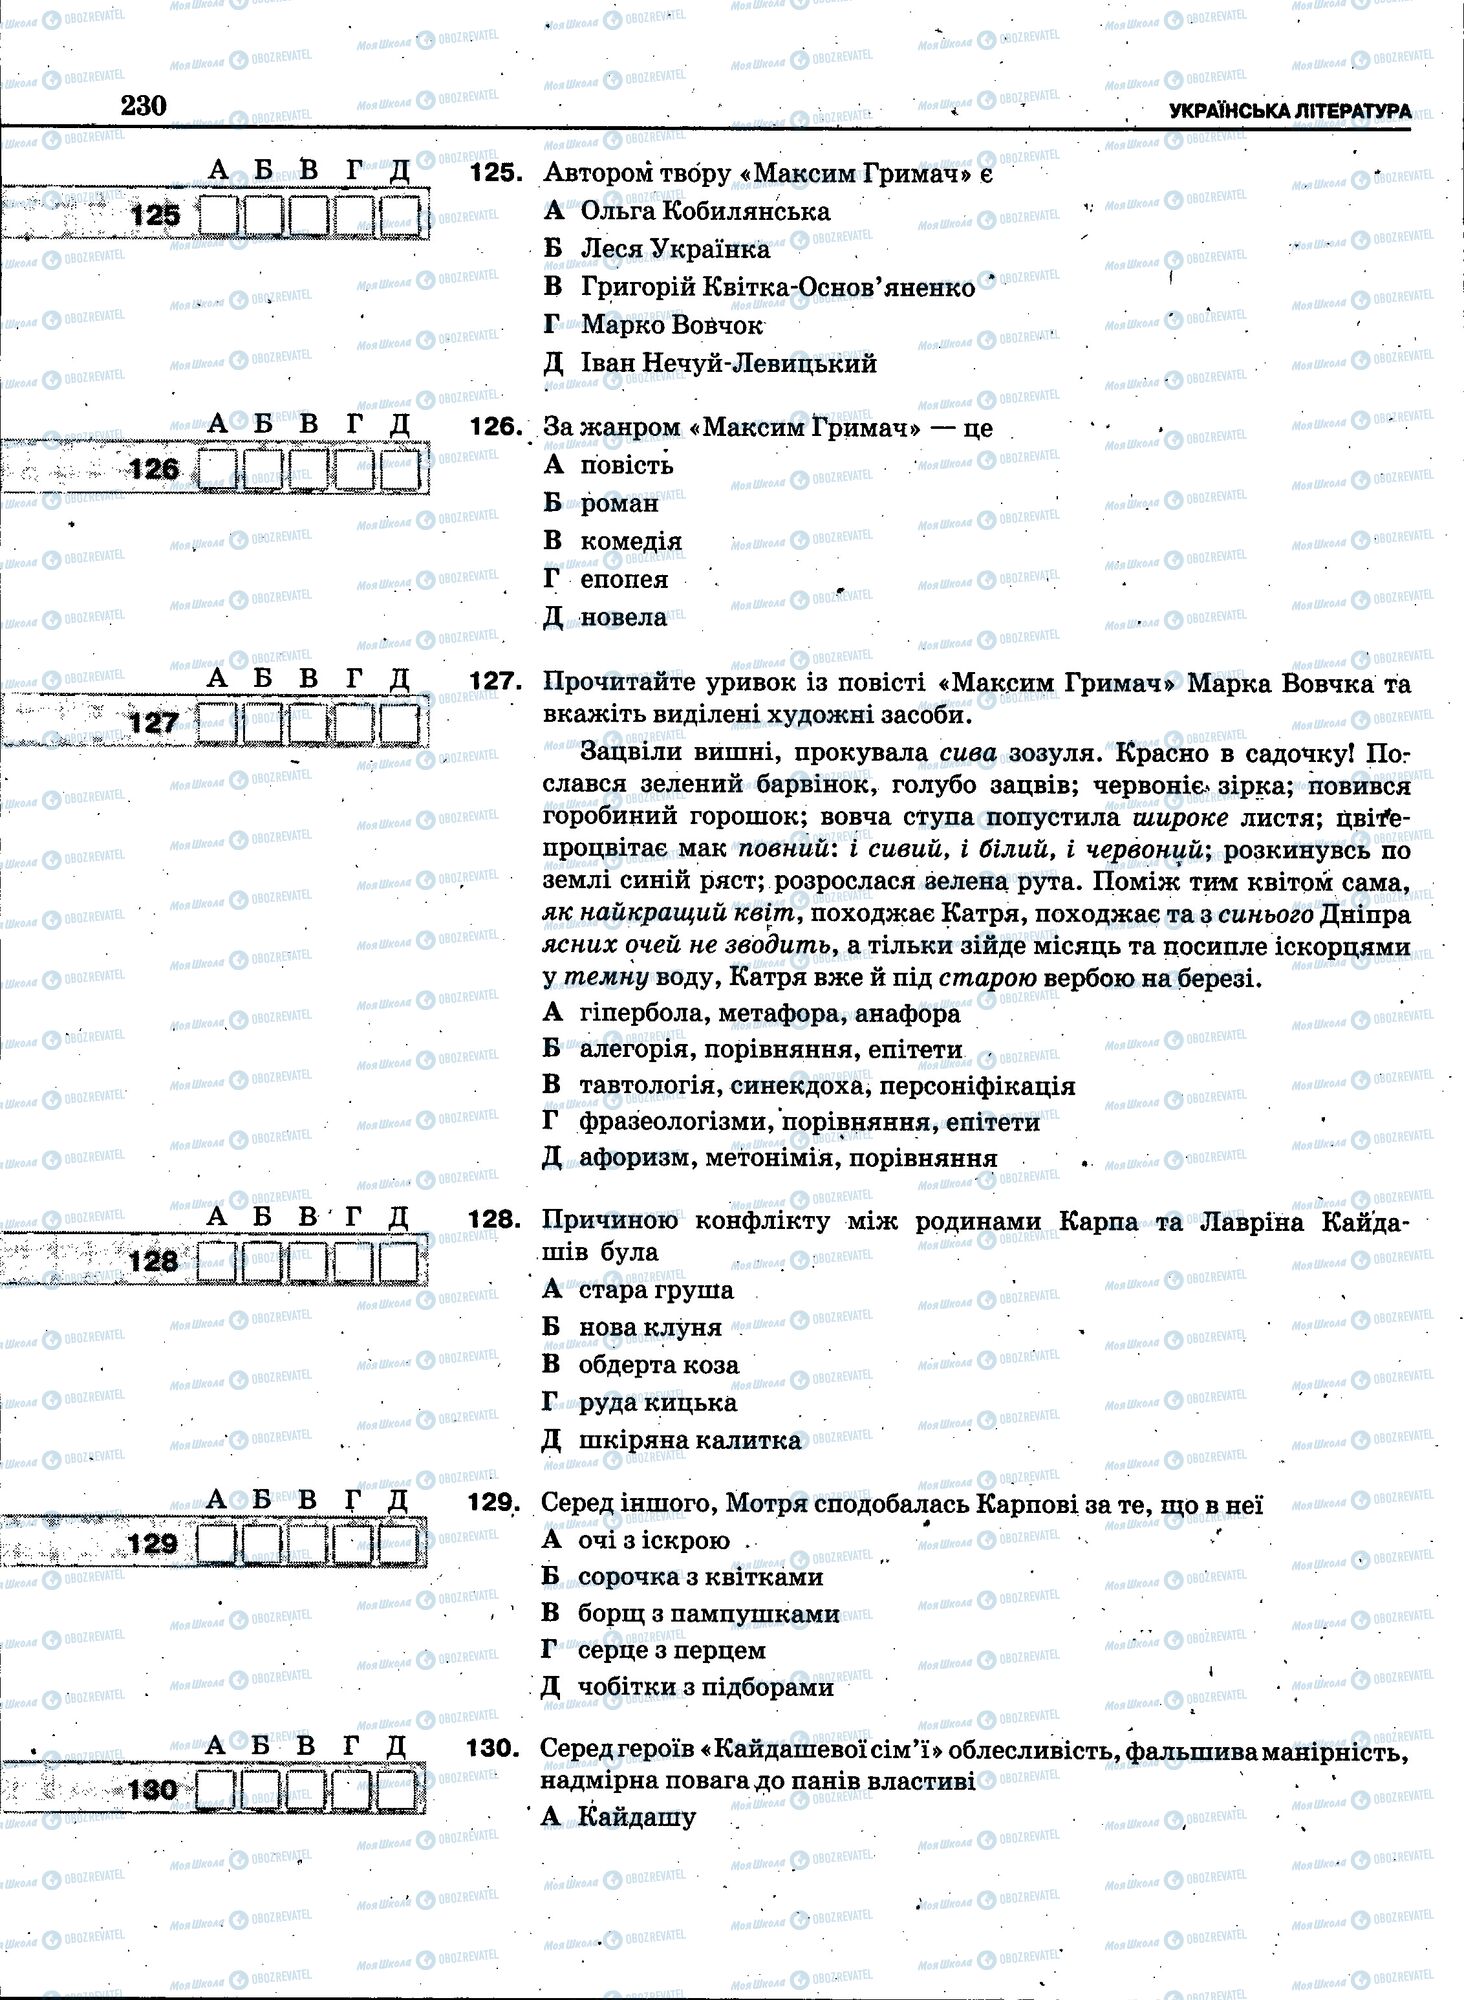 ЗНО Укр мова 11 класс страница 228